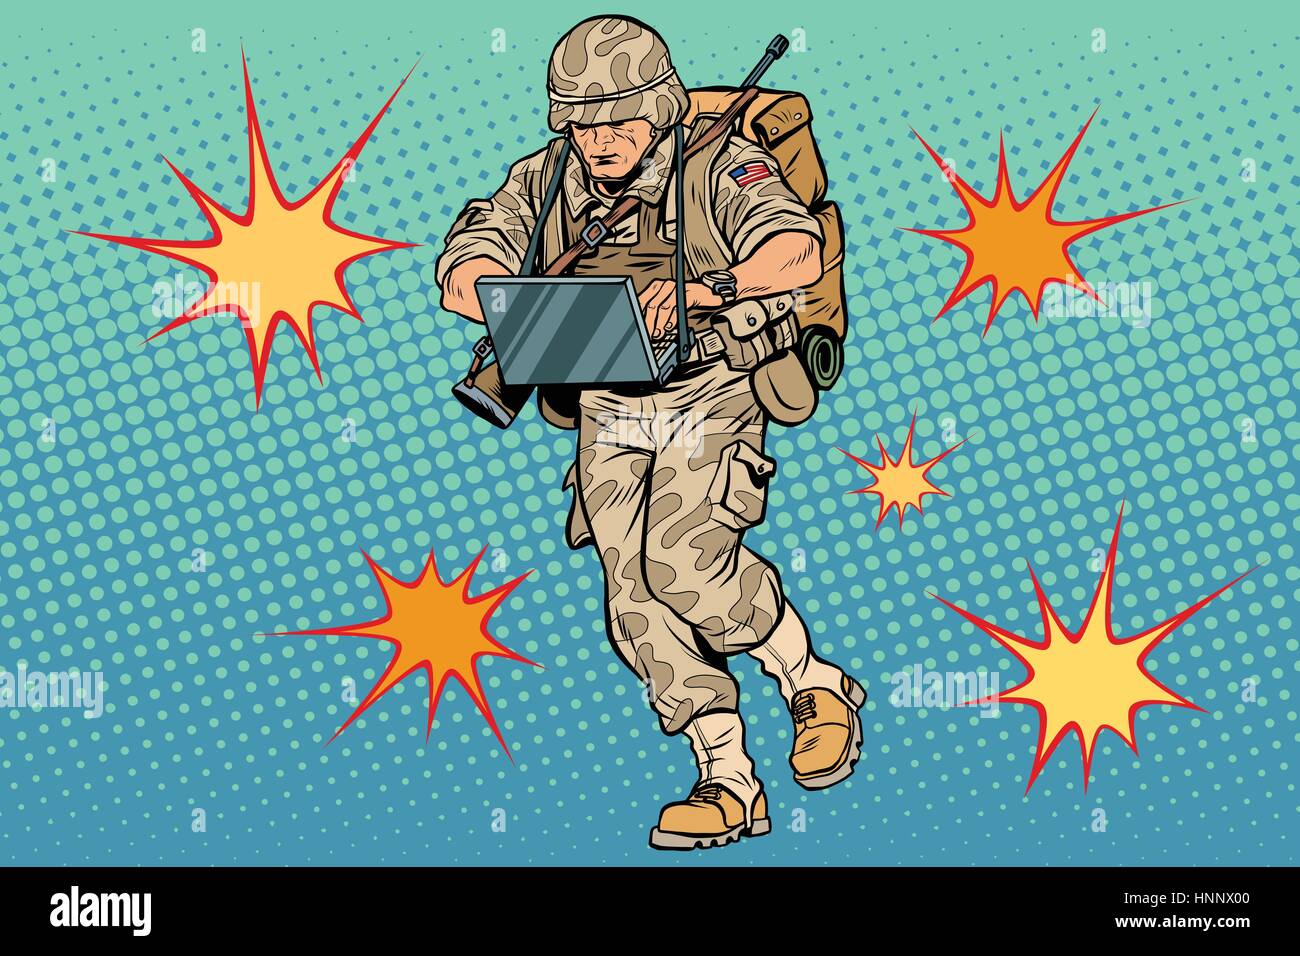 Cyber-Soldat mit einem Computer. Vintage Pop-Art-Retro-Comic-Buch-Vektor-Illustration. Kommando-Offizier. US-Armee. Flash-Explosionen Stock Vektor